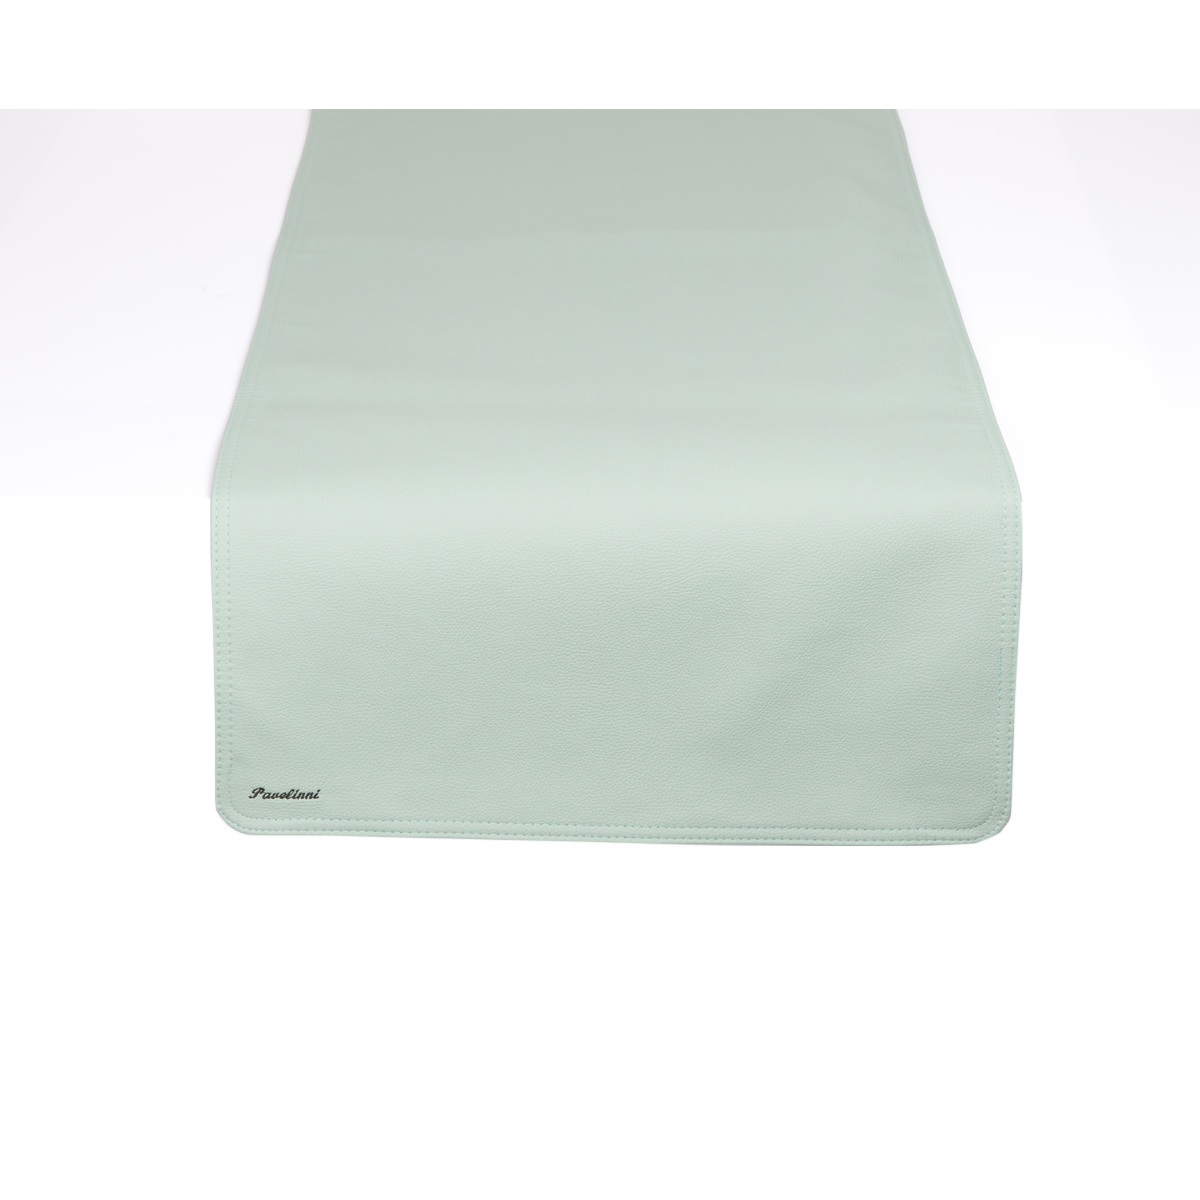 Leder Tischläufer | Classic Hampton | Einseitig | 450x1200mm | Erhältlich in 8 Farben